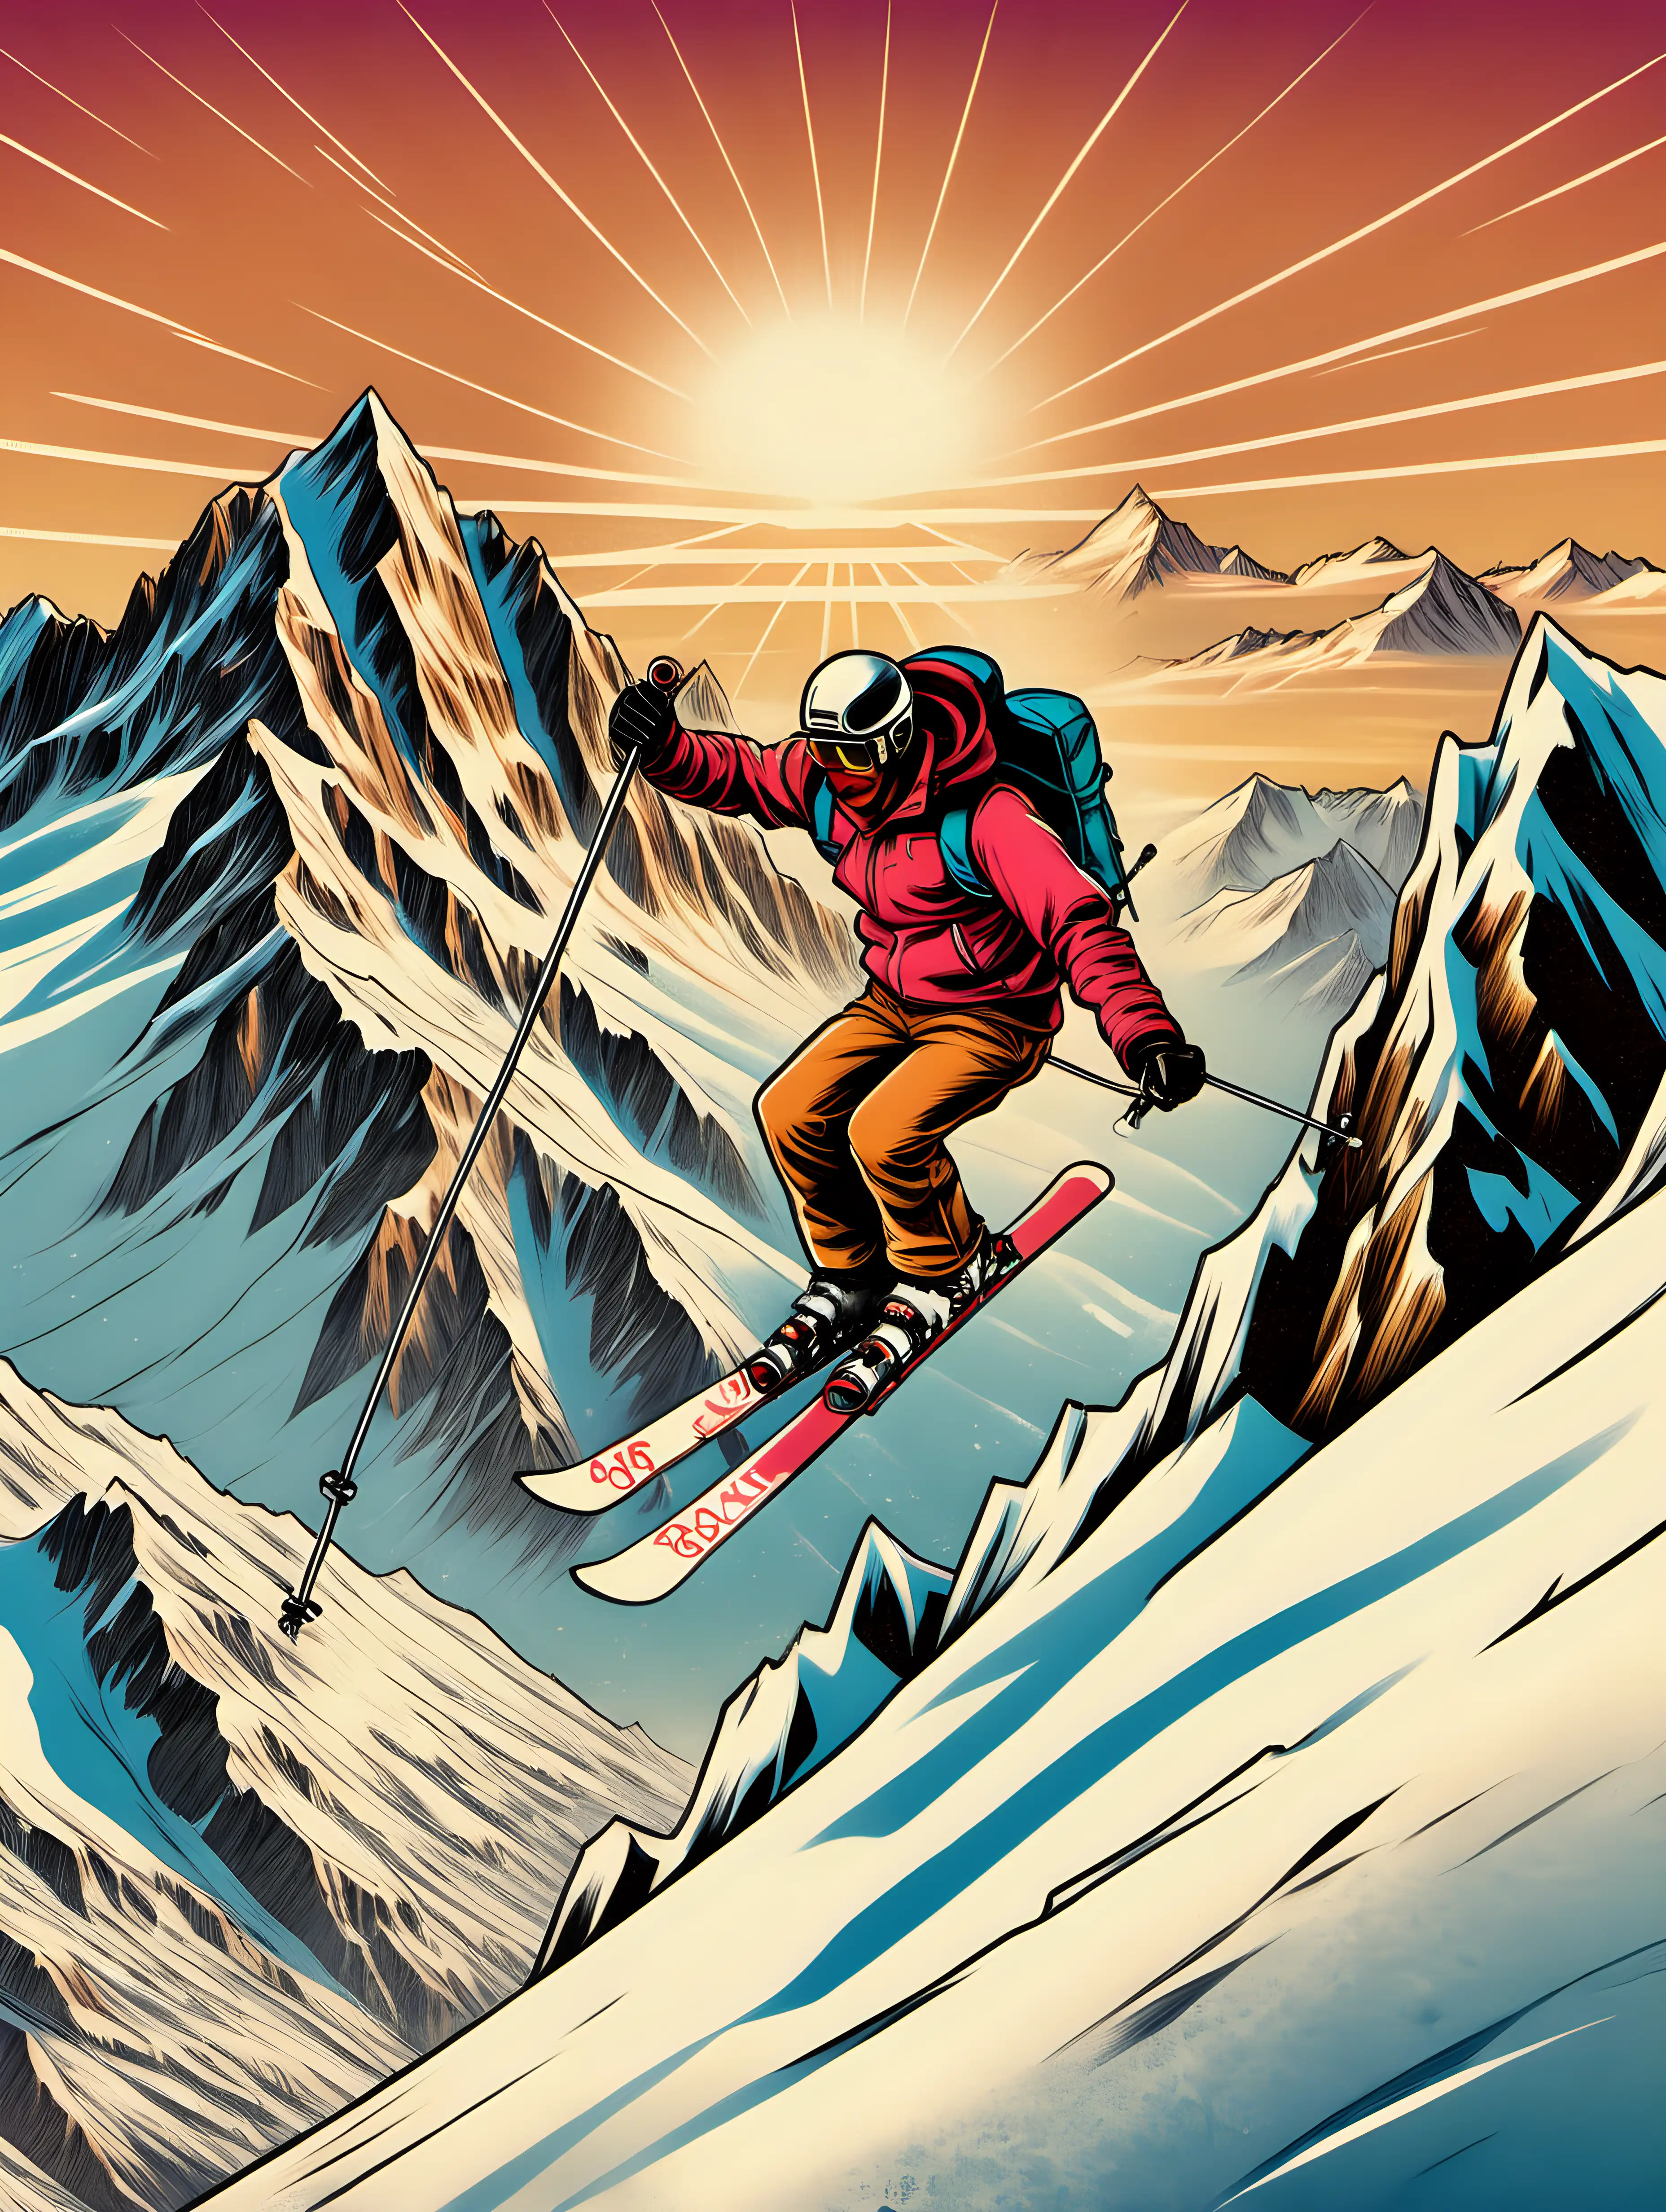 un skieur qui fait une chute en vol dans de la neige poudreuse, les montagnes escarpées enneigées.
un dessin avec ambiance vintage année 80
un baton dans chaque main, un ski à chaque pied
coucher de soleil
mont blanc en arrière plan